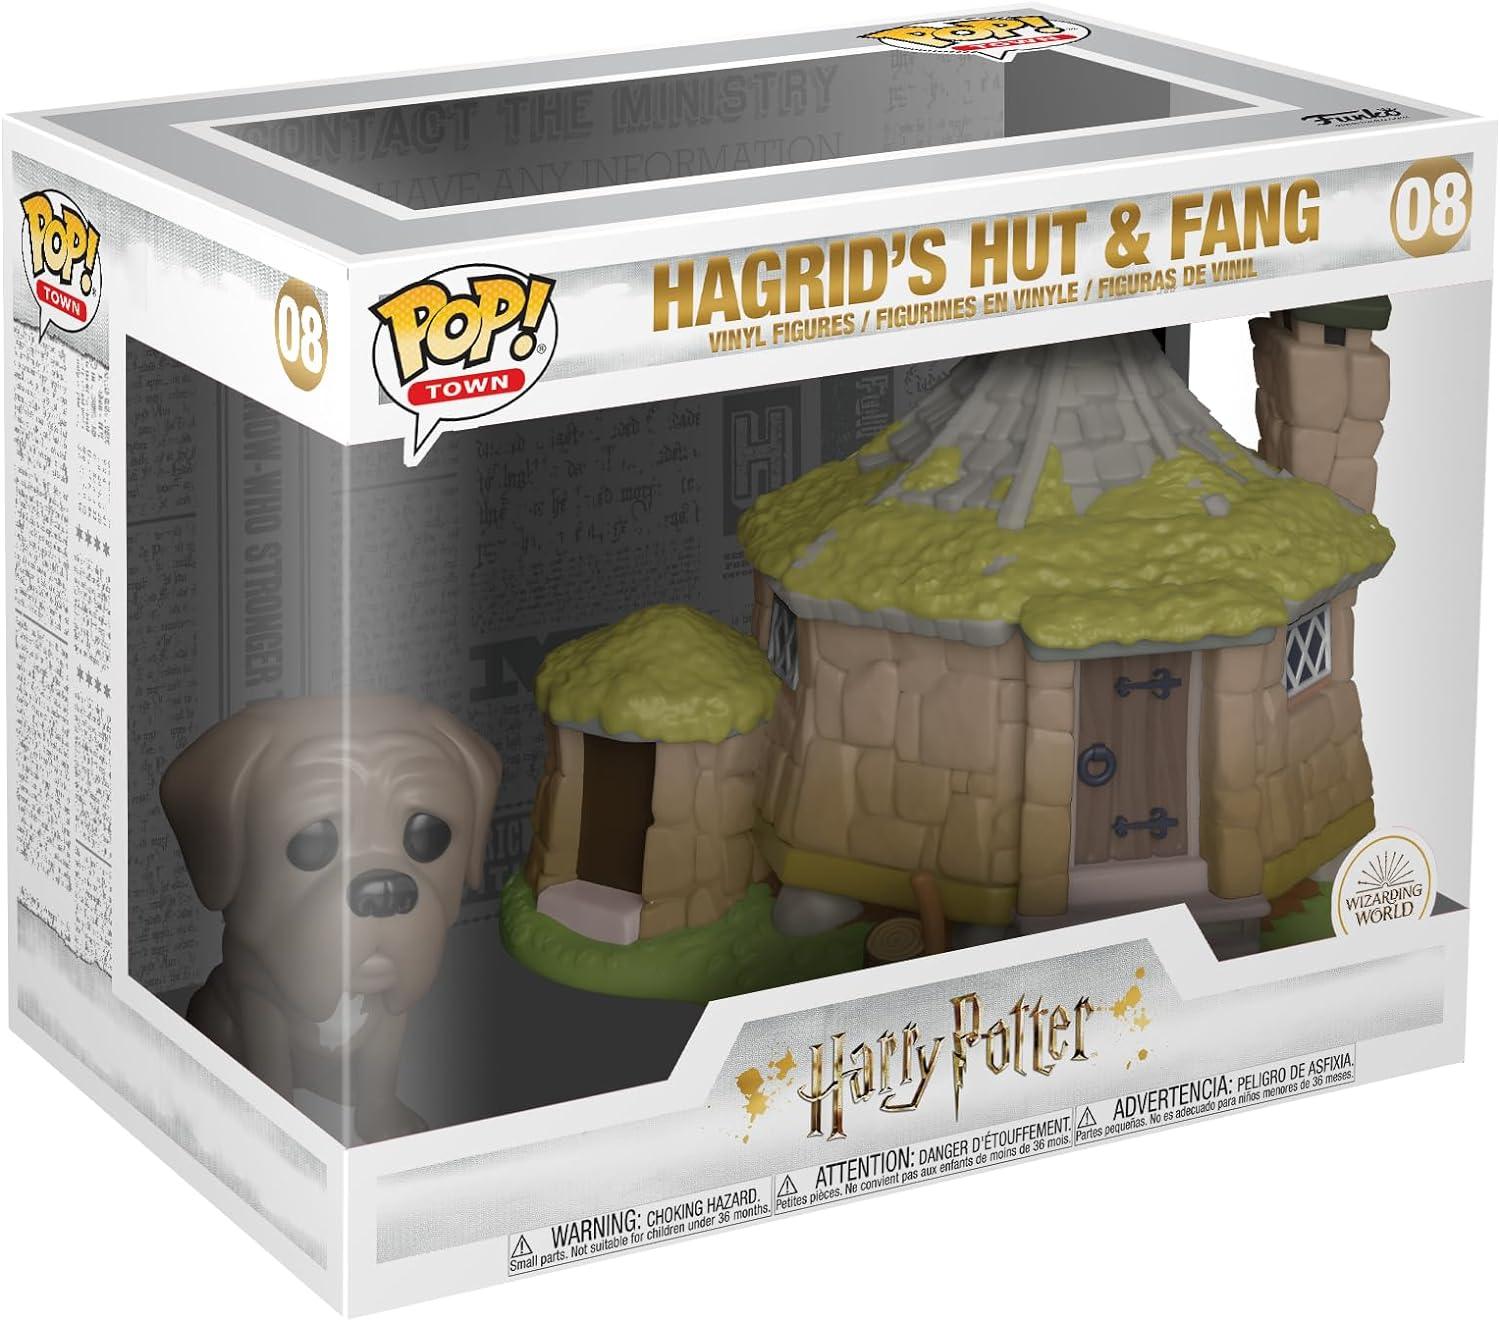 Harry Potter: Funko Pop! Town - Hagrid's hut & fang #08 - Magic Dreams Store